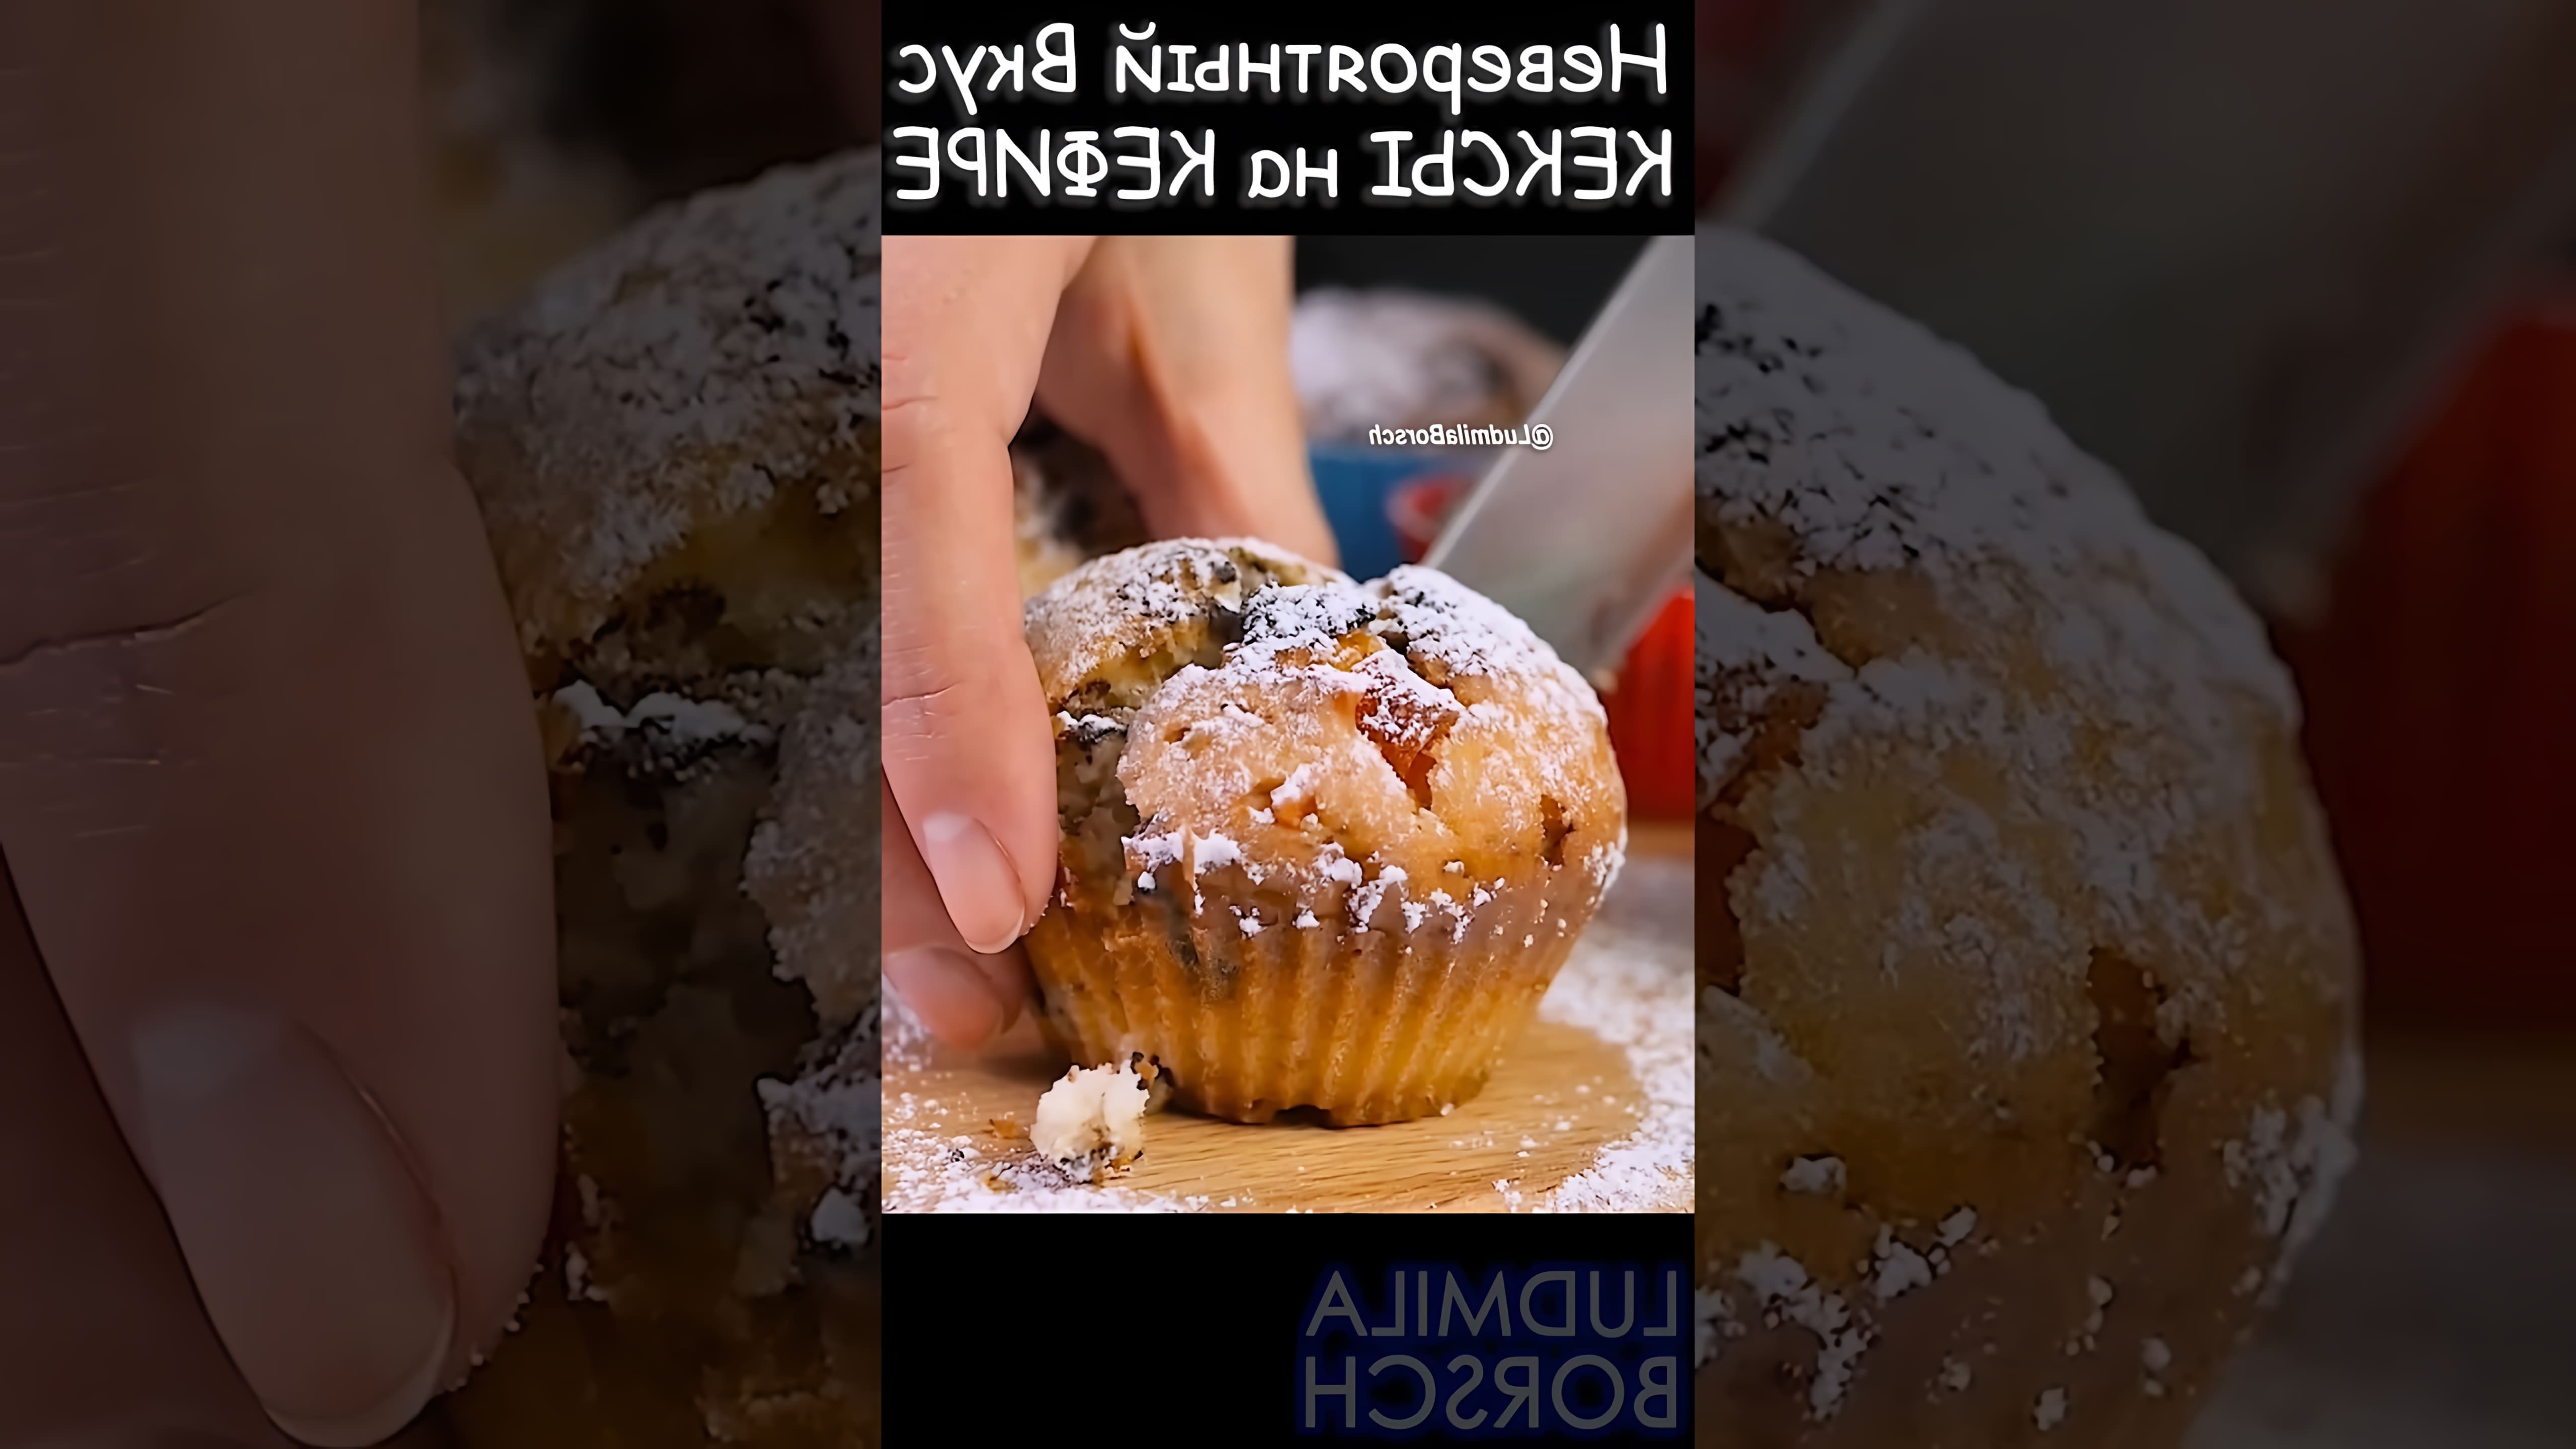 В этом видео демонстрируется рецепт приготовления кексов на кефире